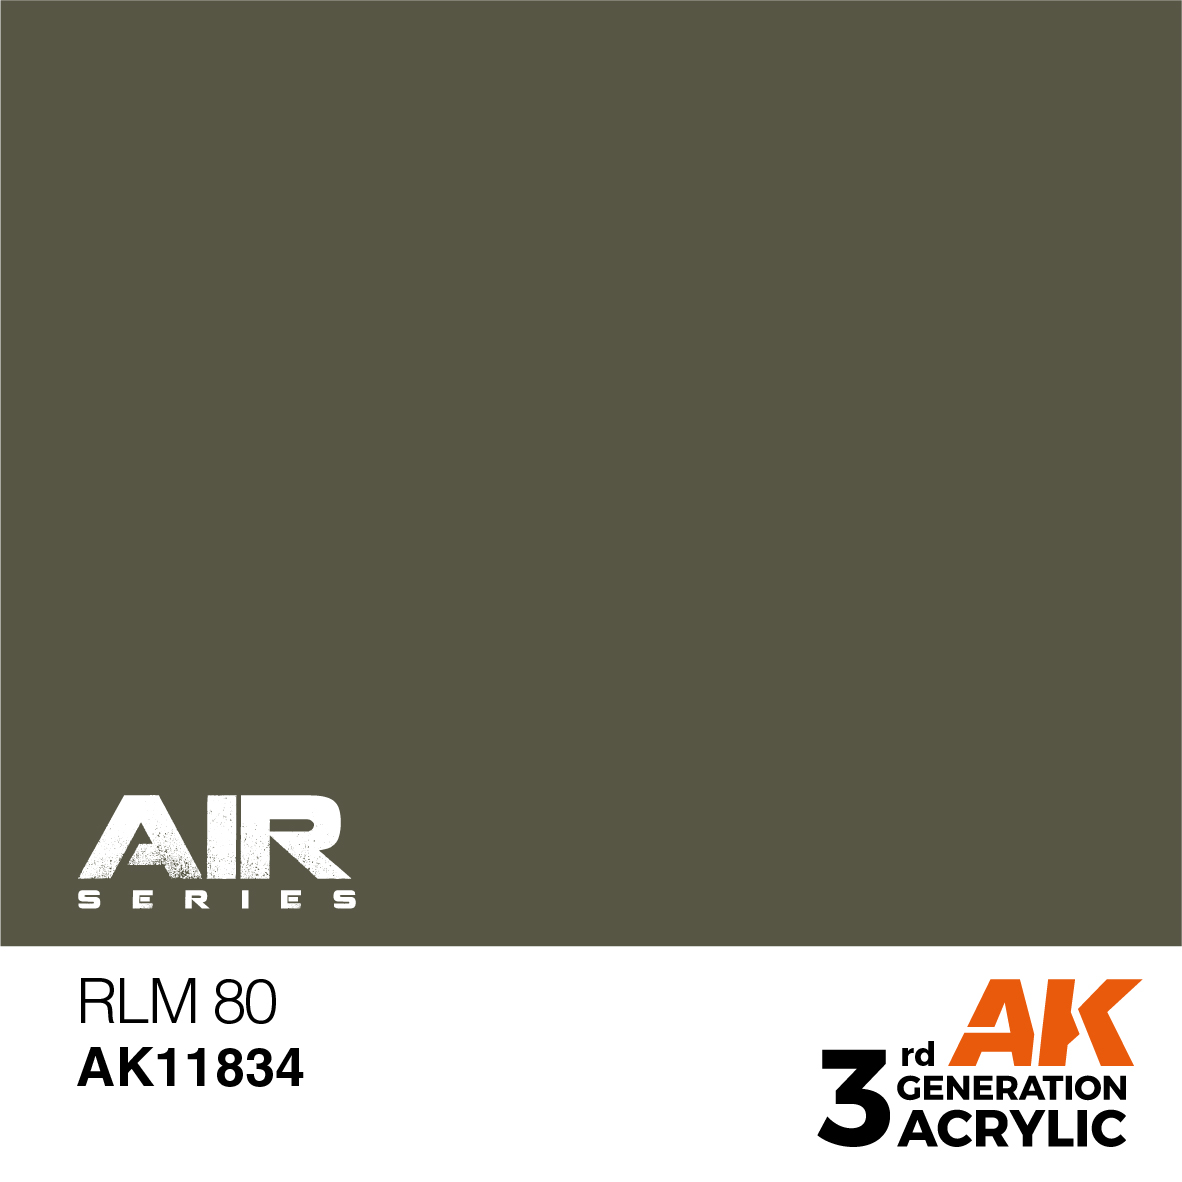 RLM 80 – AIR